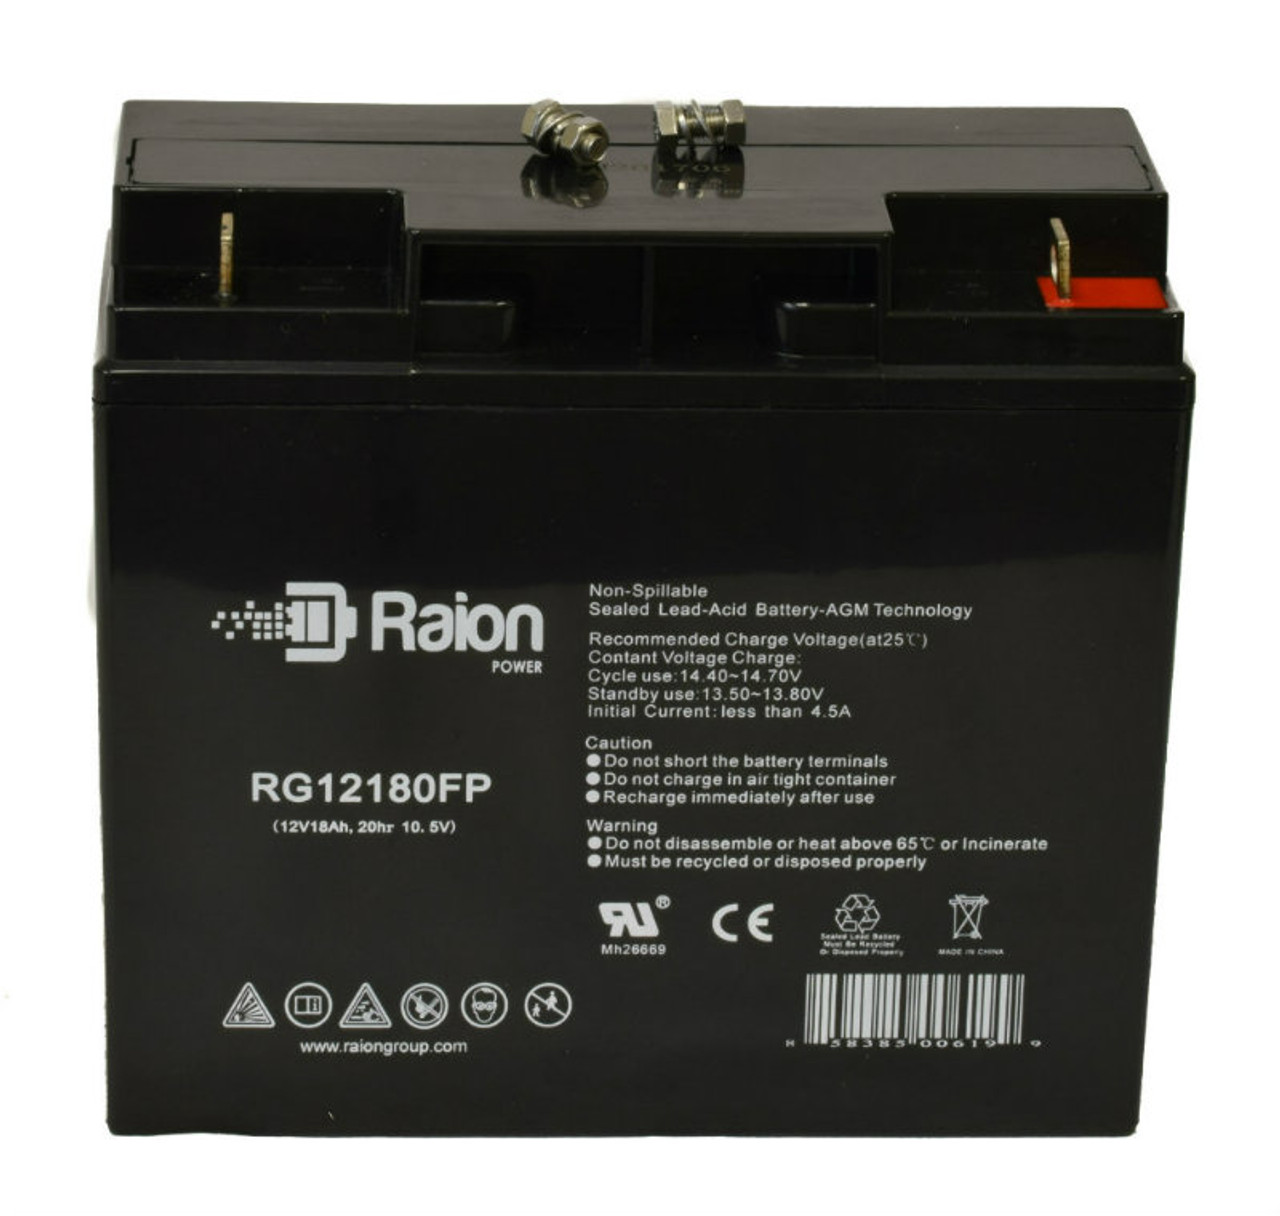 Raion Power RG12180FP 12V 18Ah Lead Acid Battery for Kinghero SJ12V20Ah